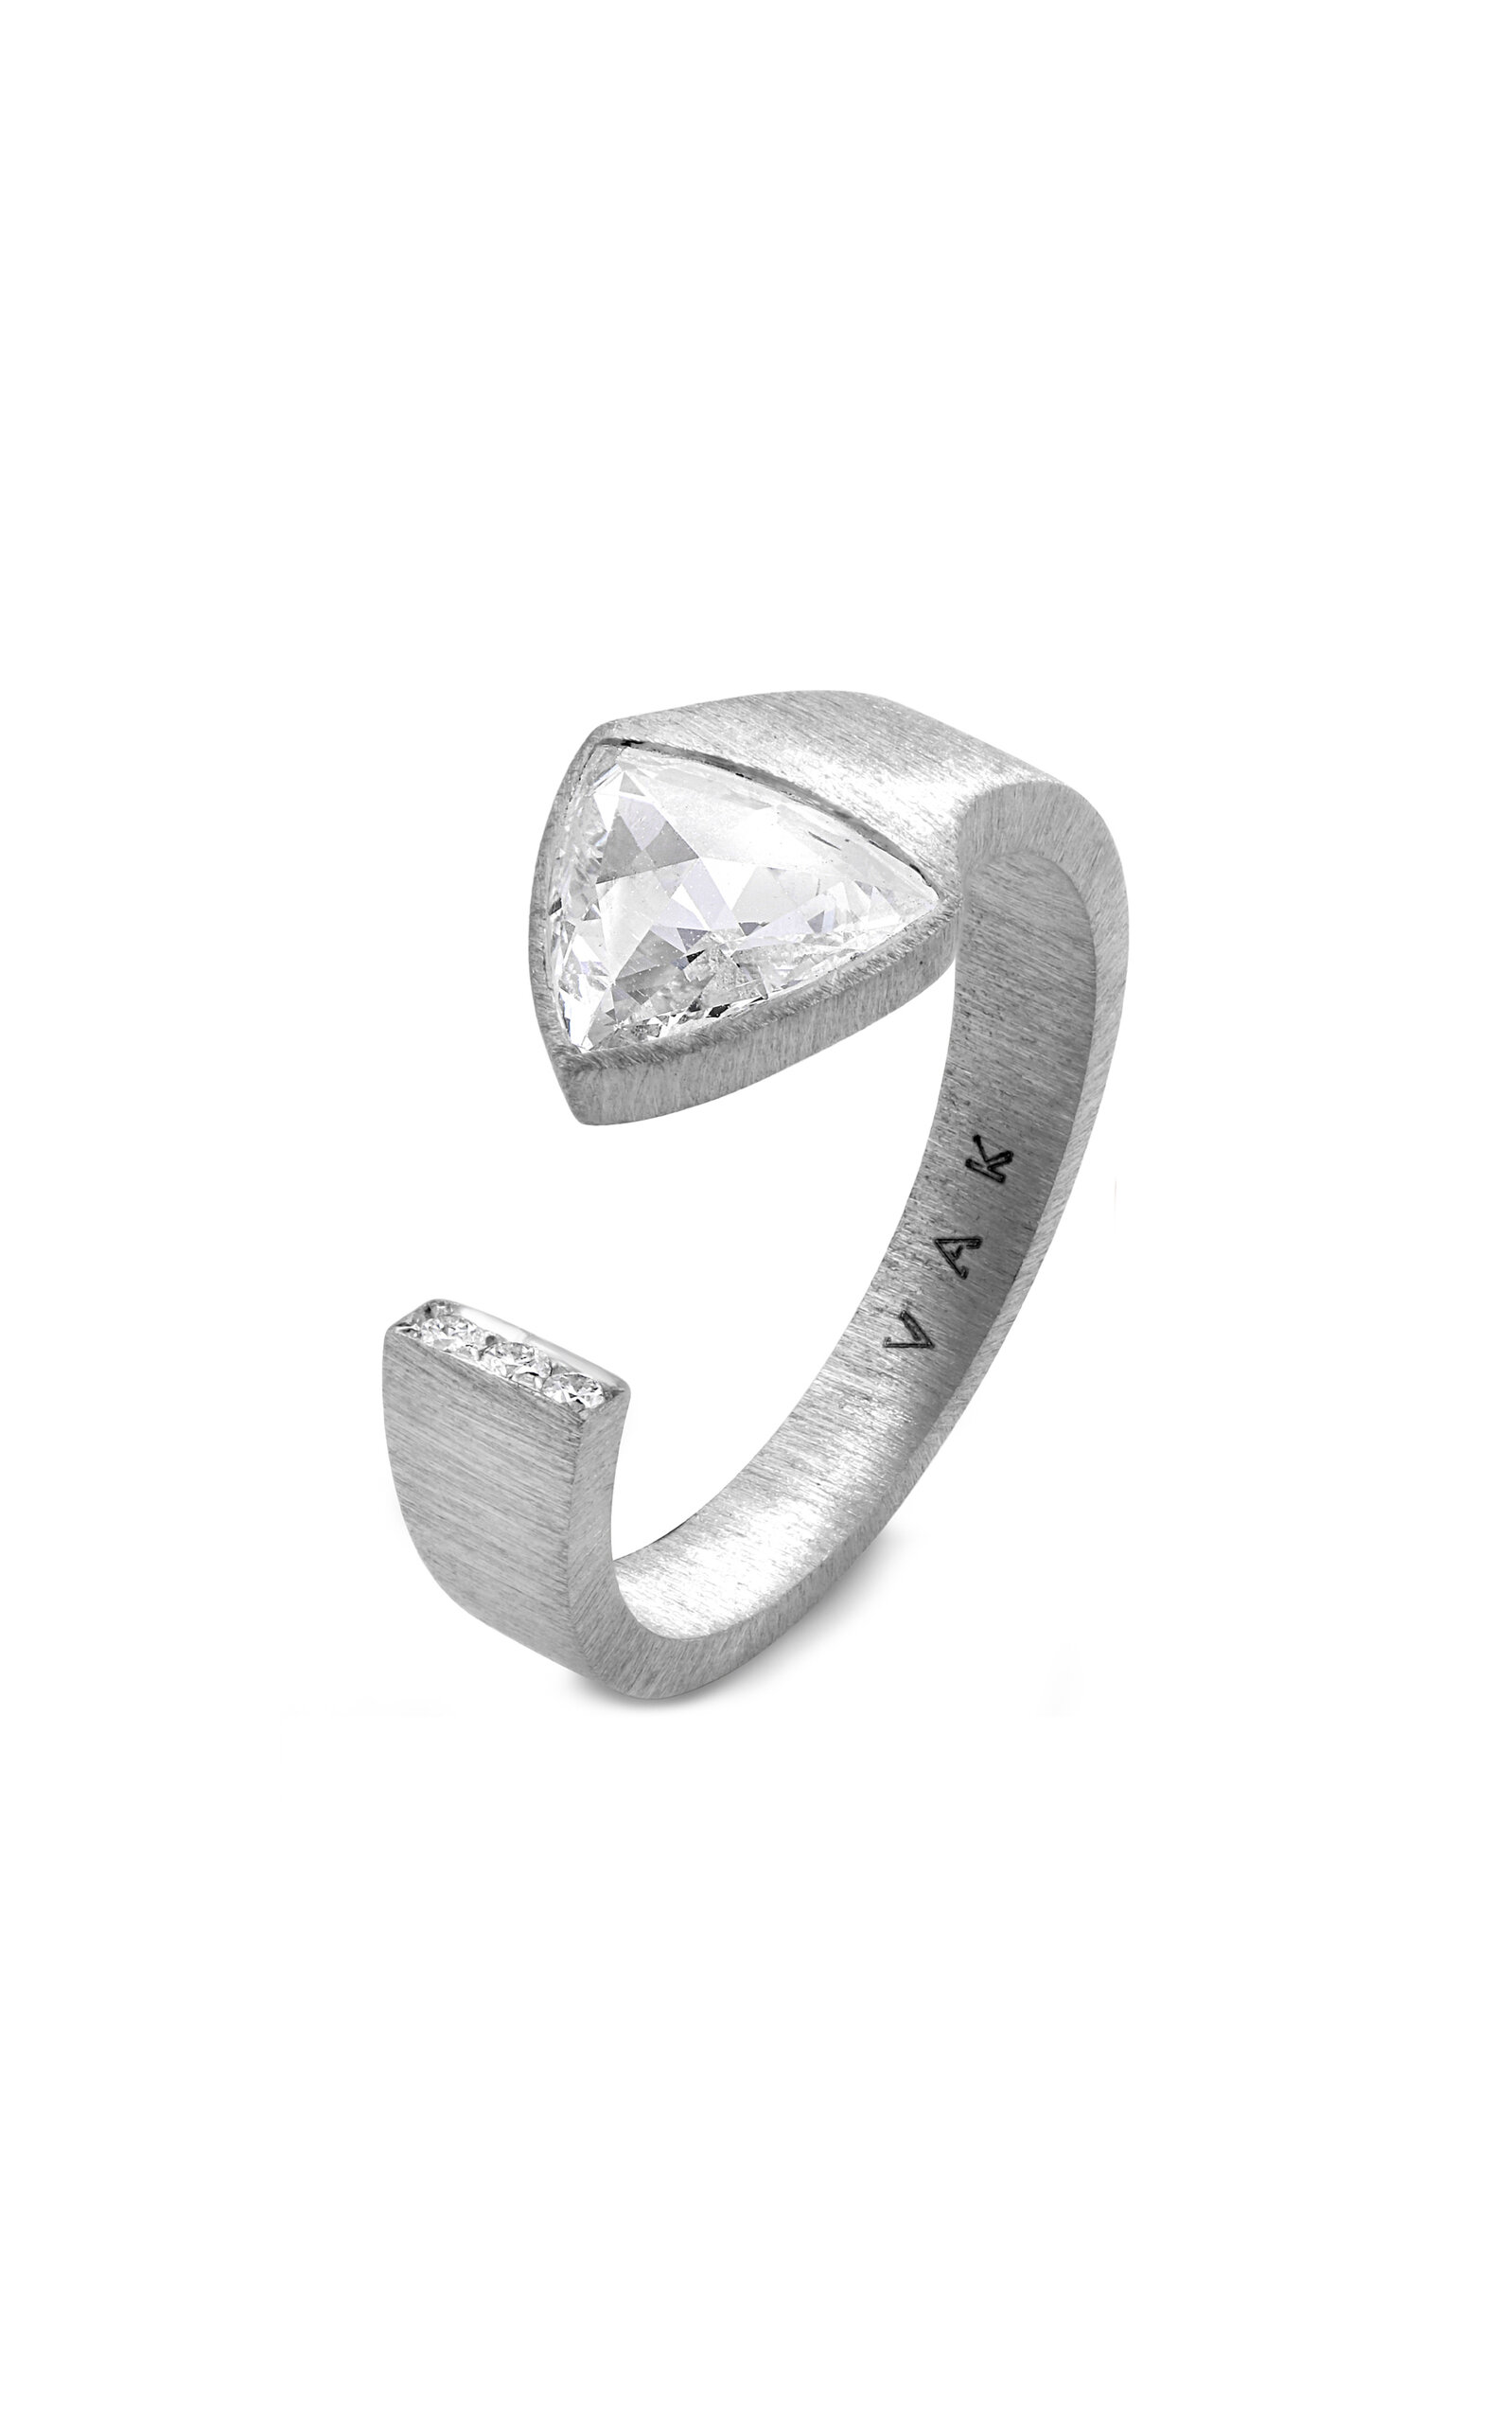 18K White Gold Architectural Splendor Diamond Ring